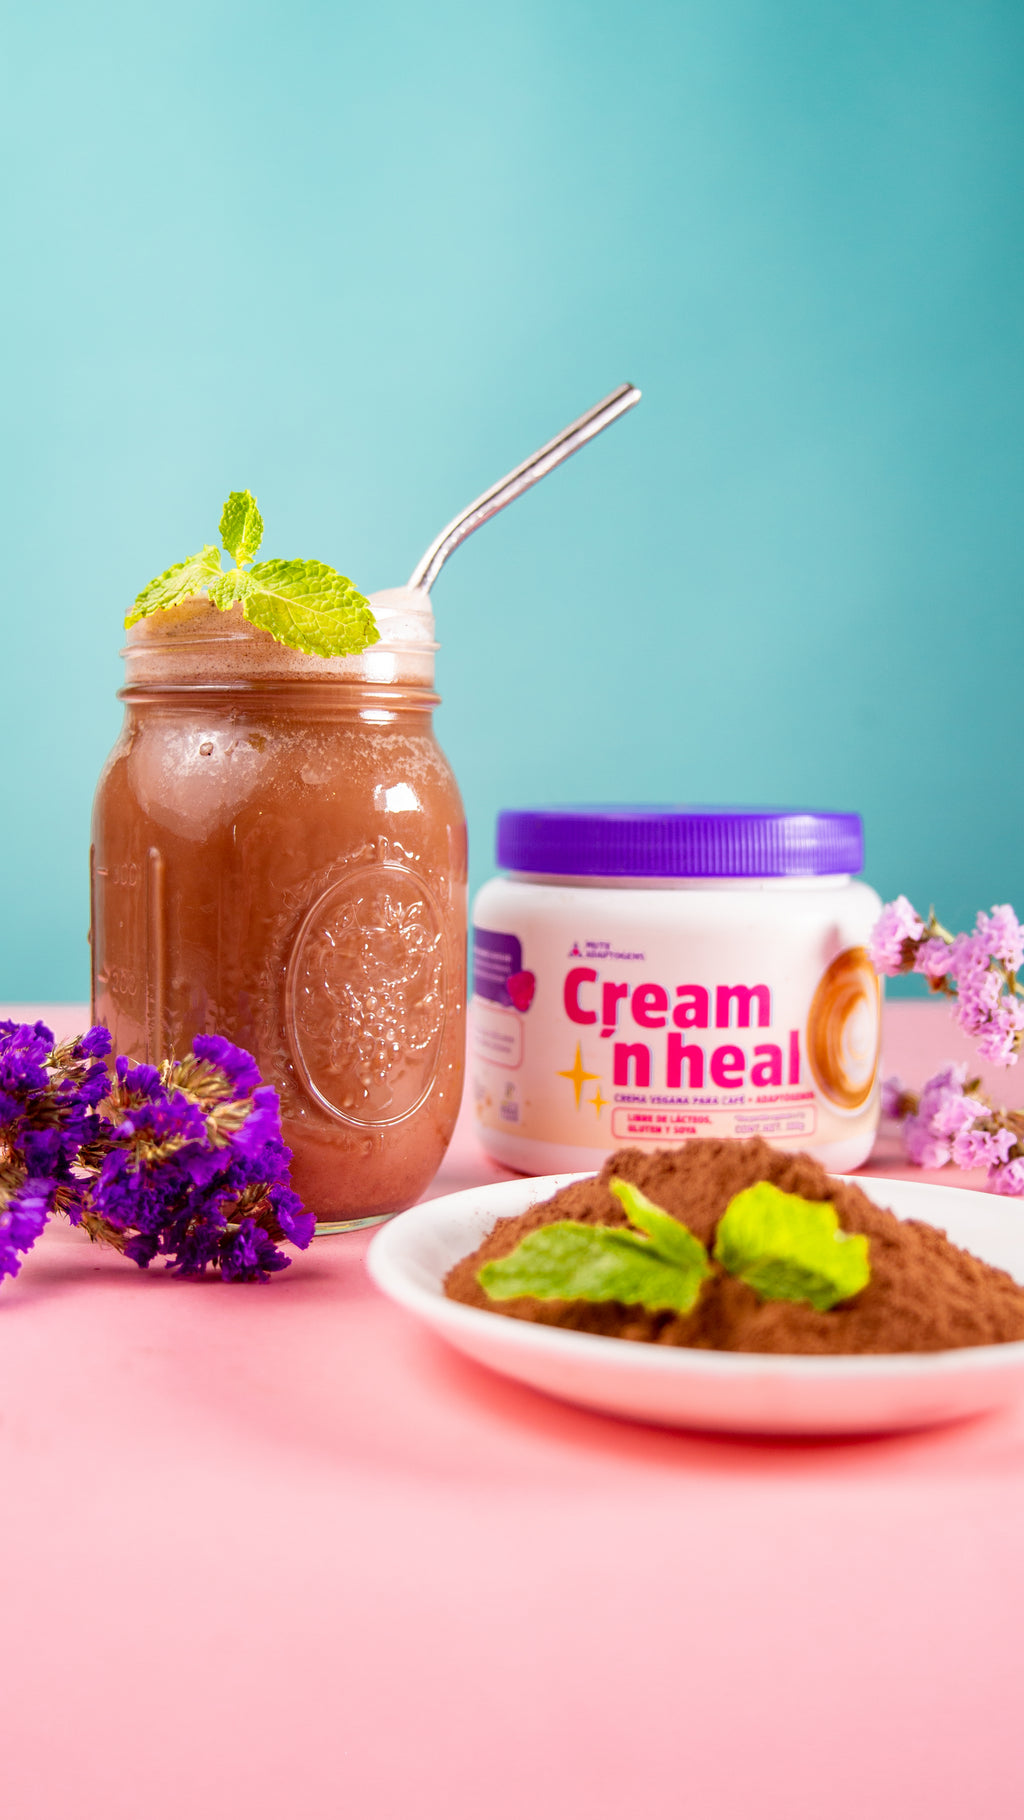 Cream 'n heal: Sustituto vegano de crema para café con adaptógenos 300